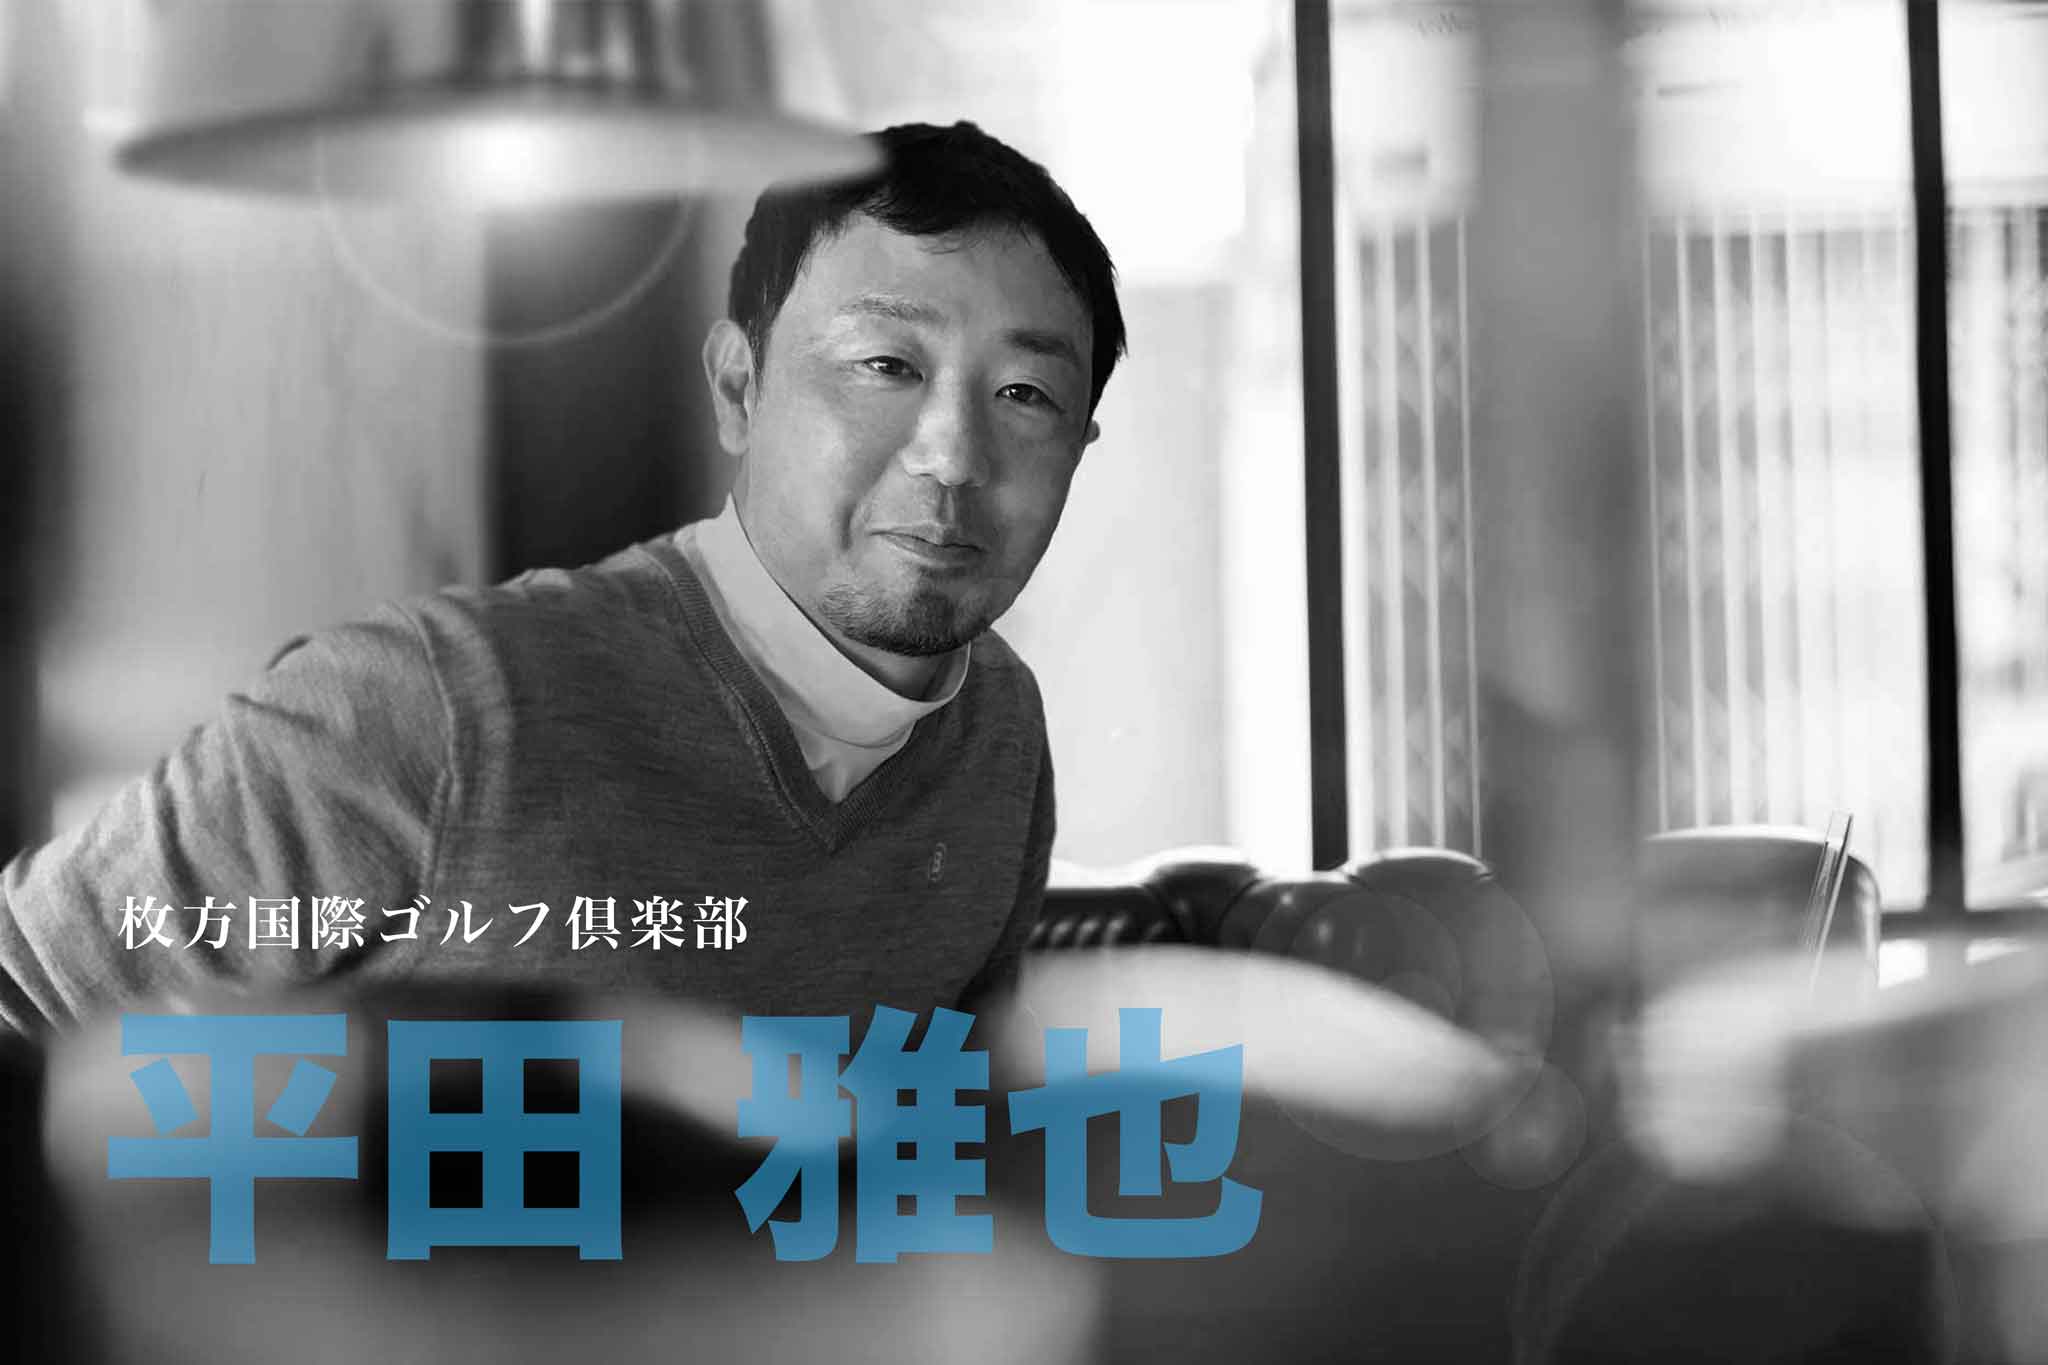 ゴルフサークル「Seven Eight セブンエイト」の「tuwamono ツワモノ」第6回のインタビュー平田雅也さんのページタイトル写真